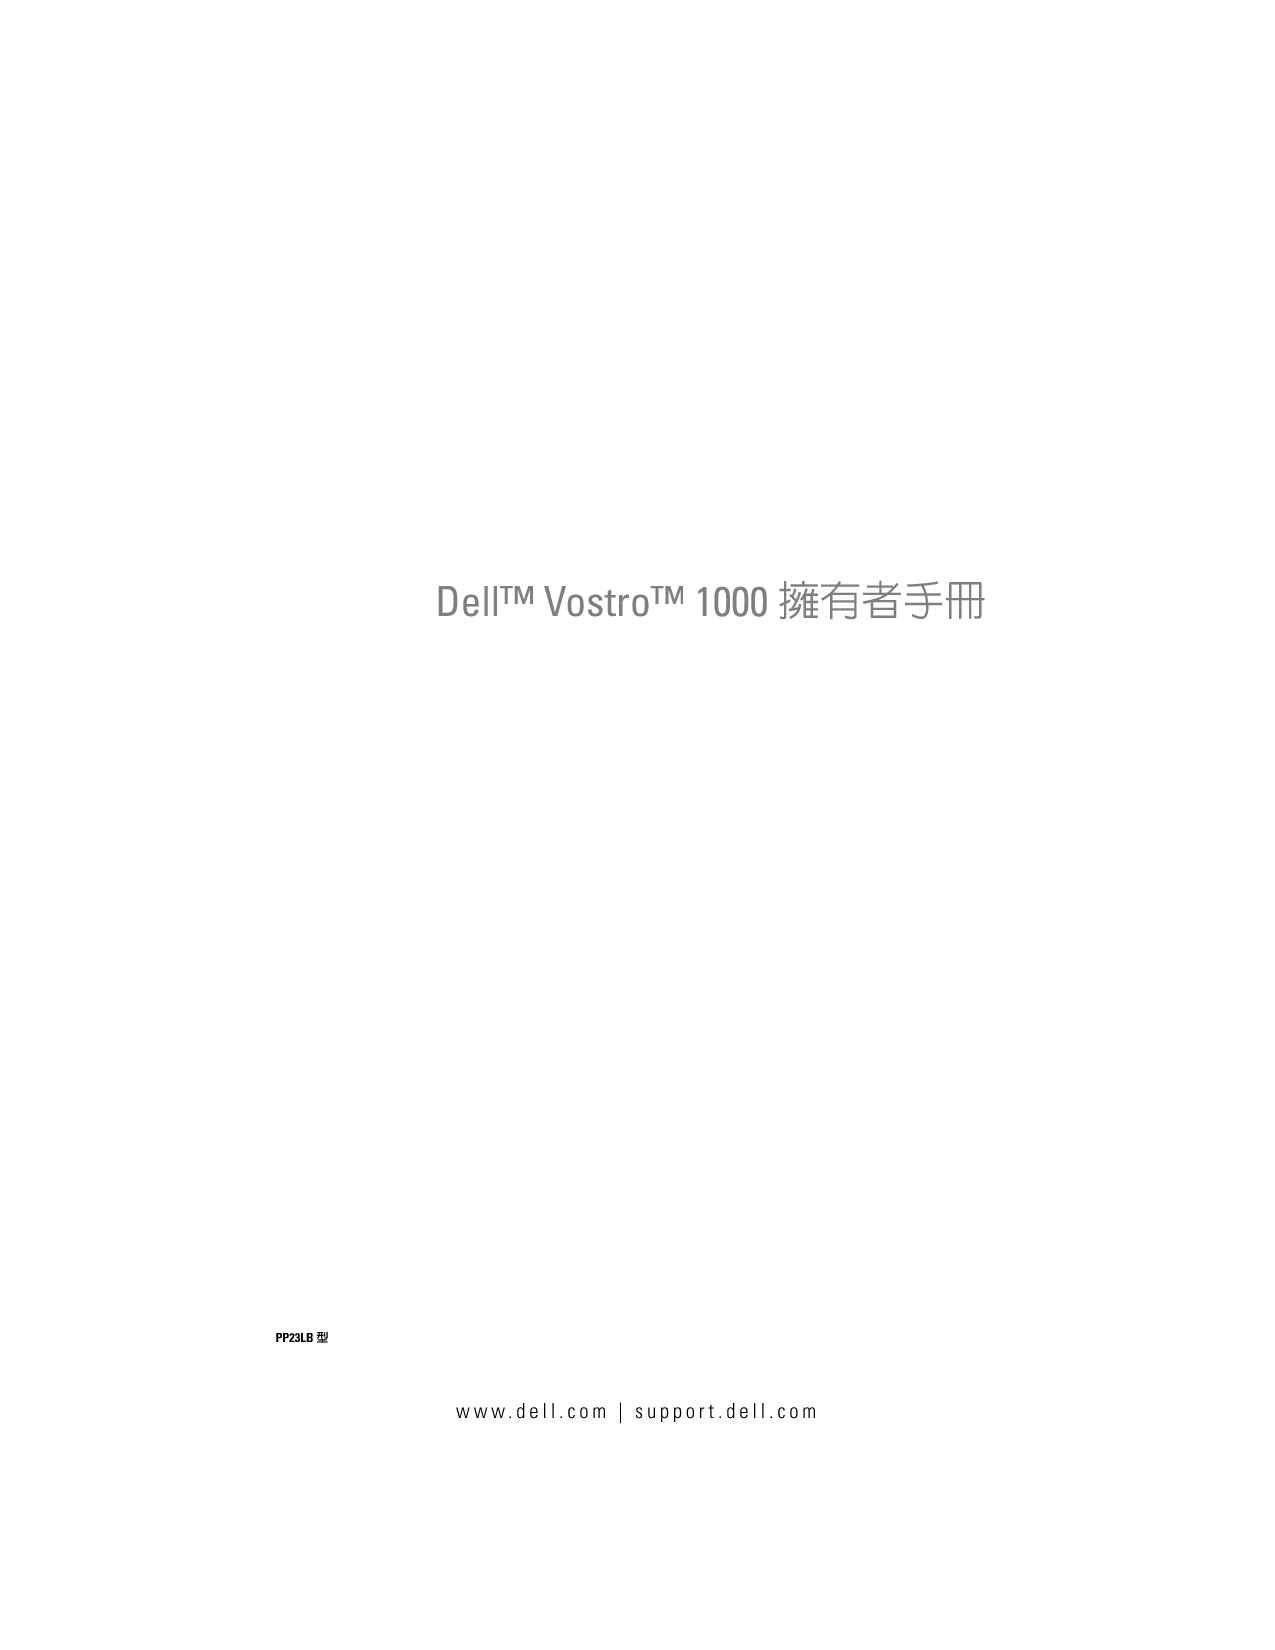 戴尔 Dell Vostro 1000 繁体 用户手册 封面